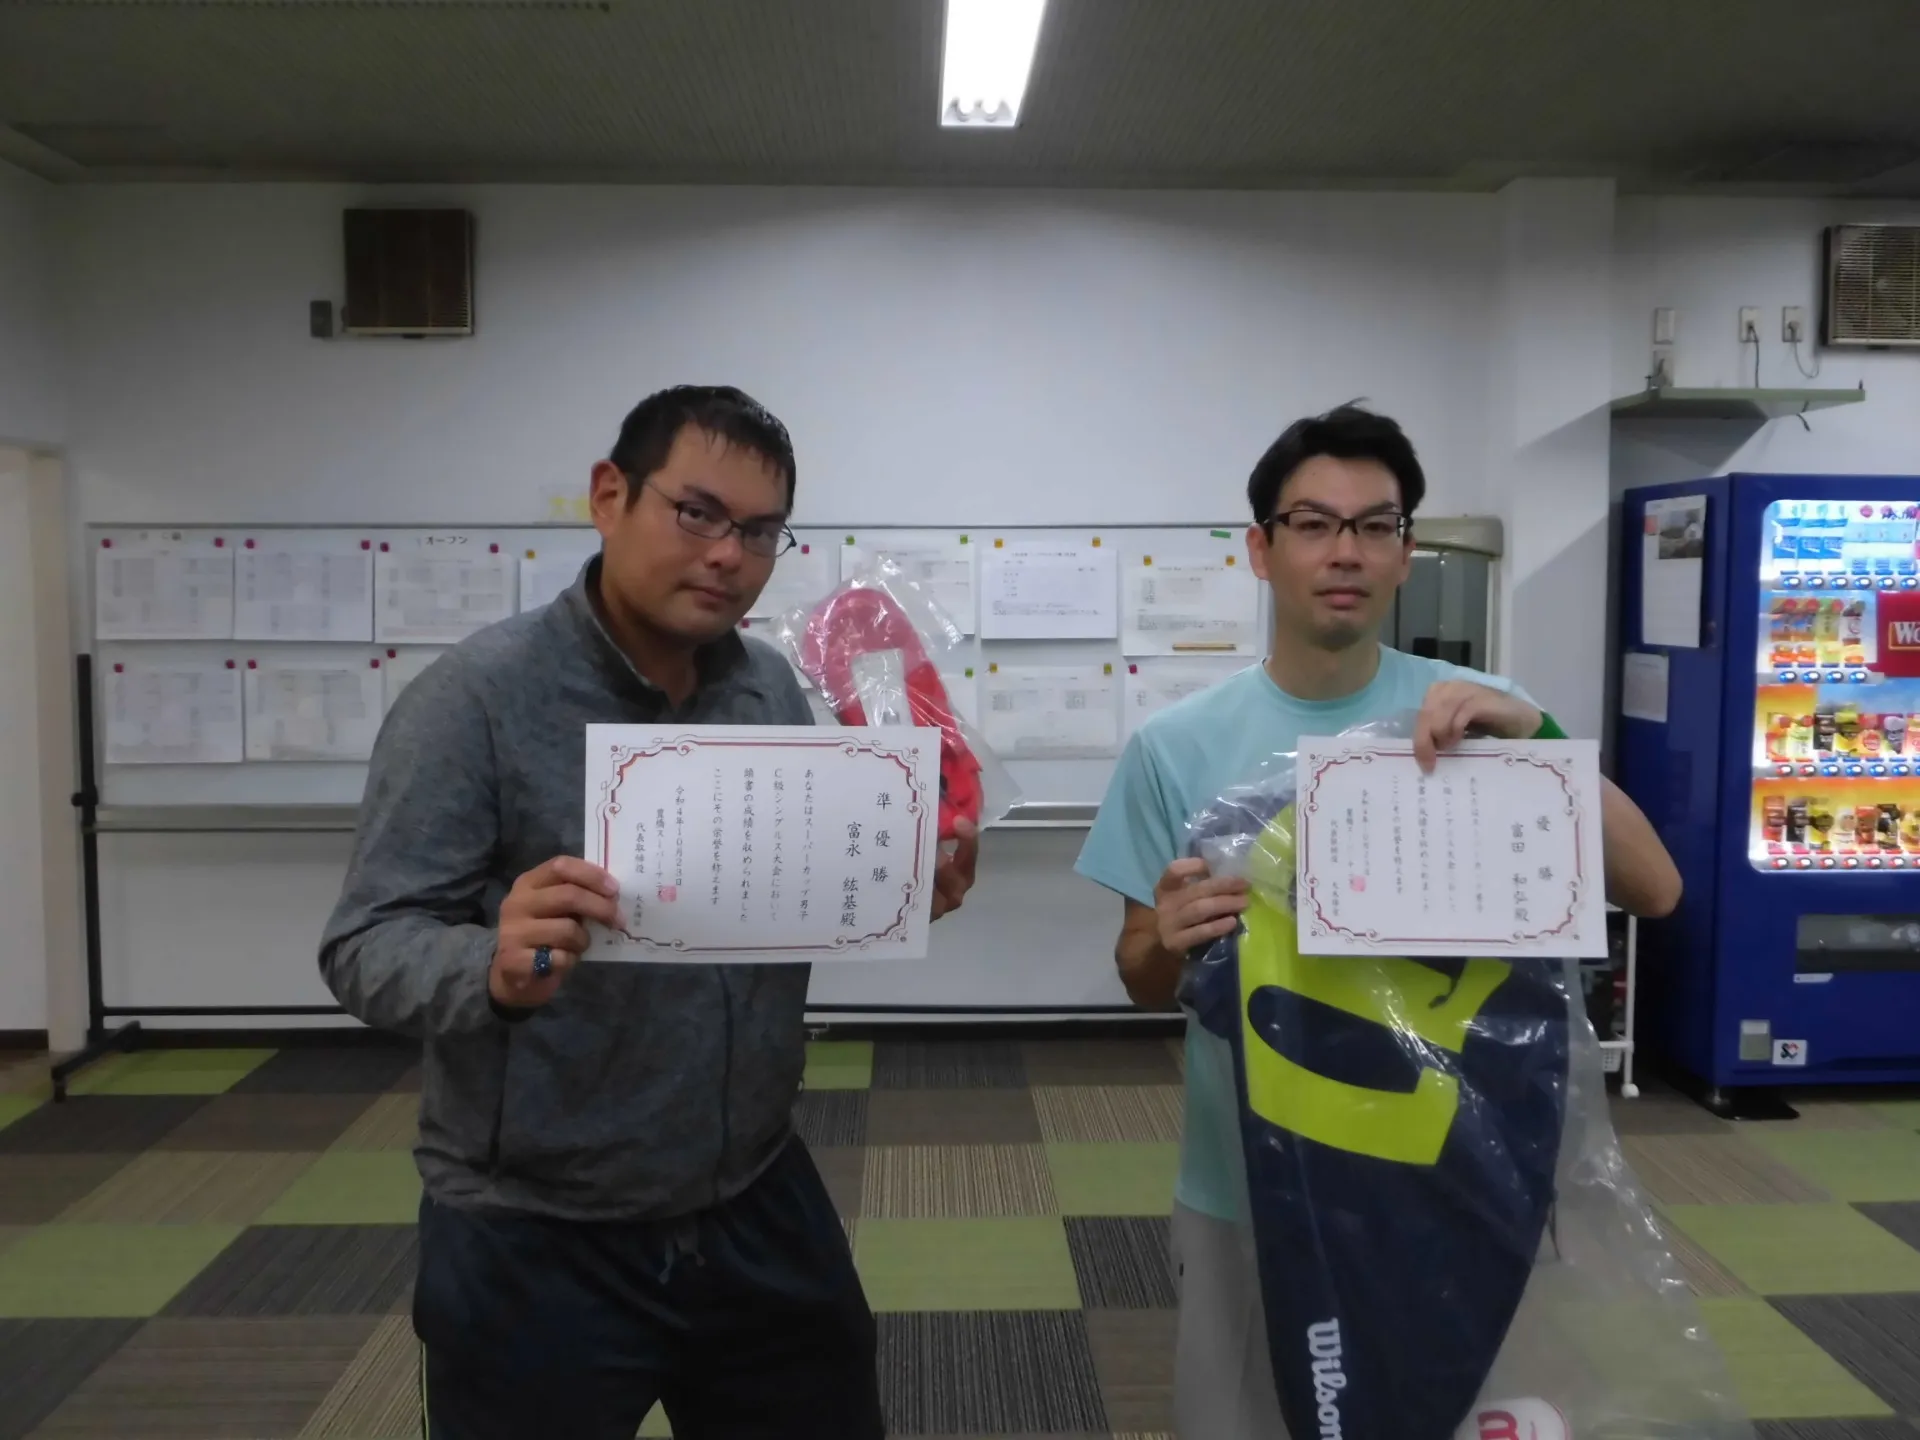 【豊橋】10/23(日）男子C級シングルステニス大会≪結果≫｜スーパーフィットスポーツ